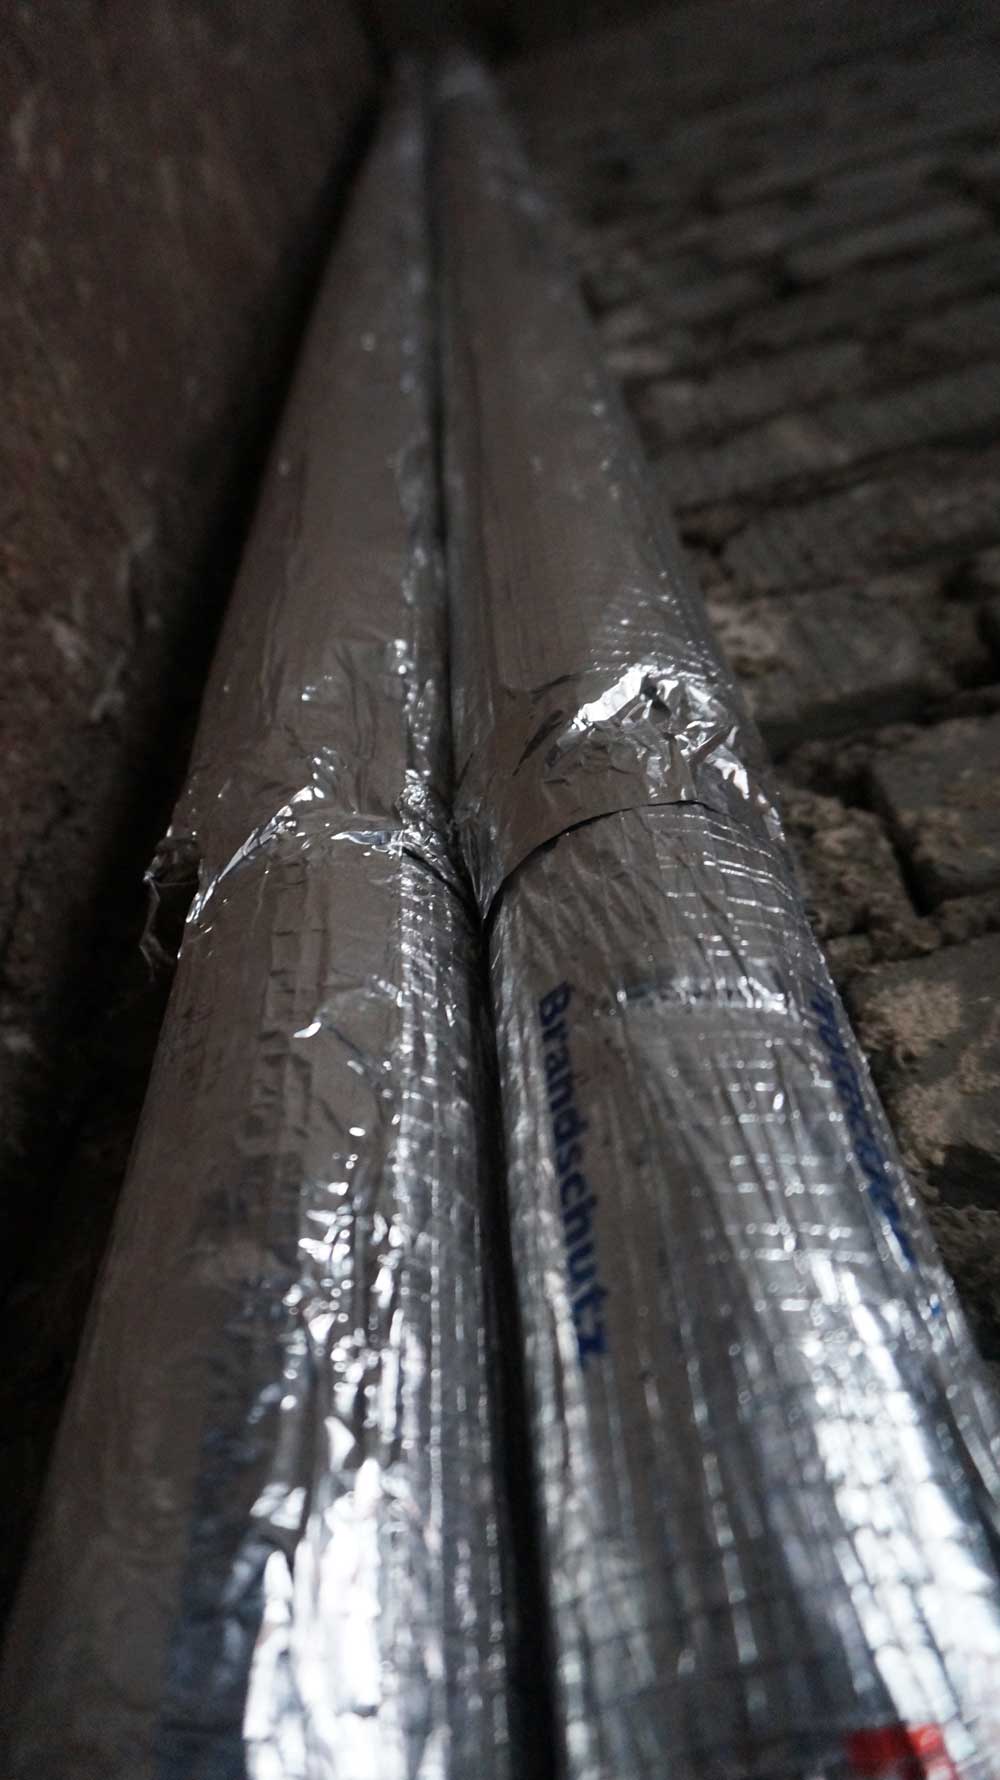 industrial aluminium foil